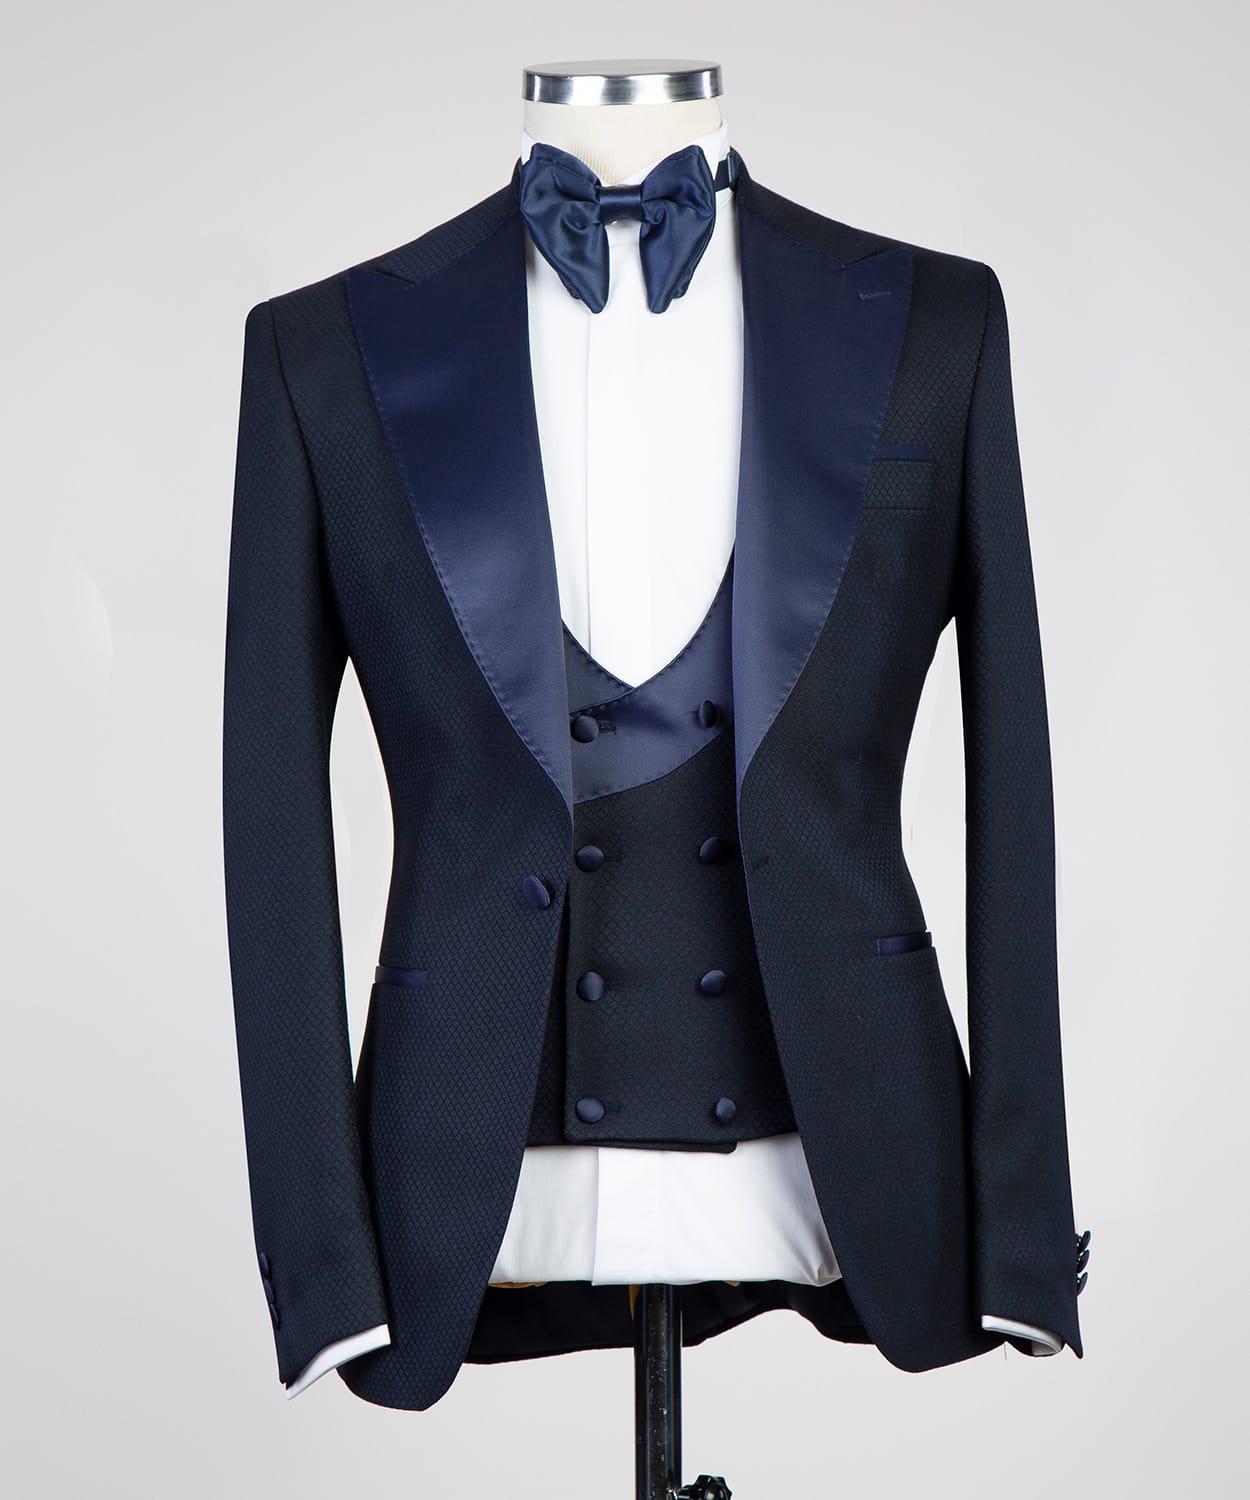 Exkluzivní bespoke set dinner jacket - smoking jacket - tuxedo JDobias-tailoring